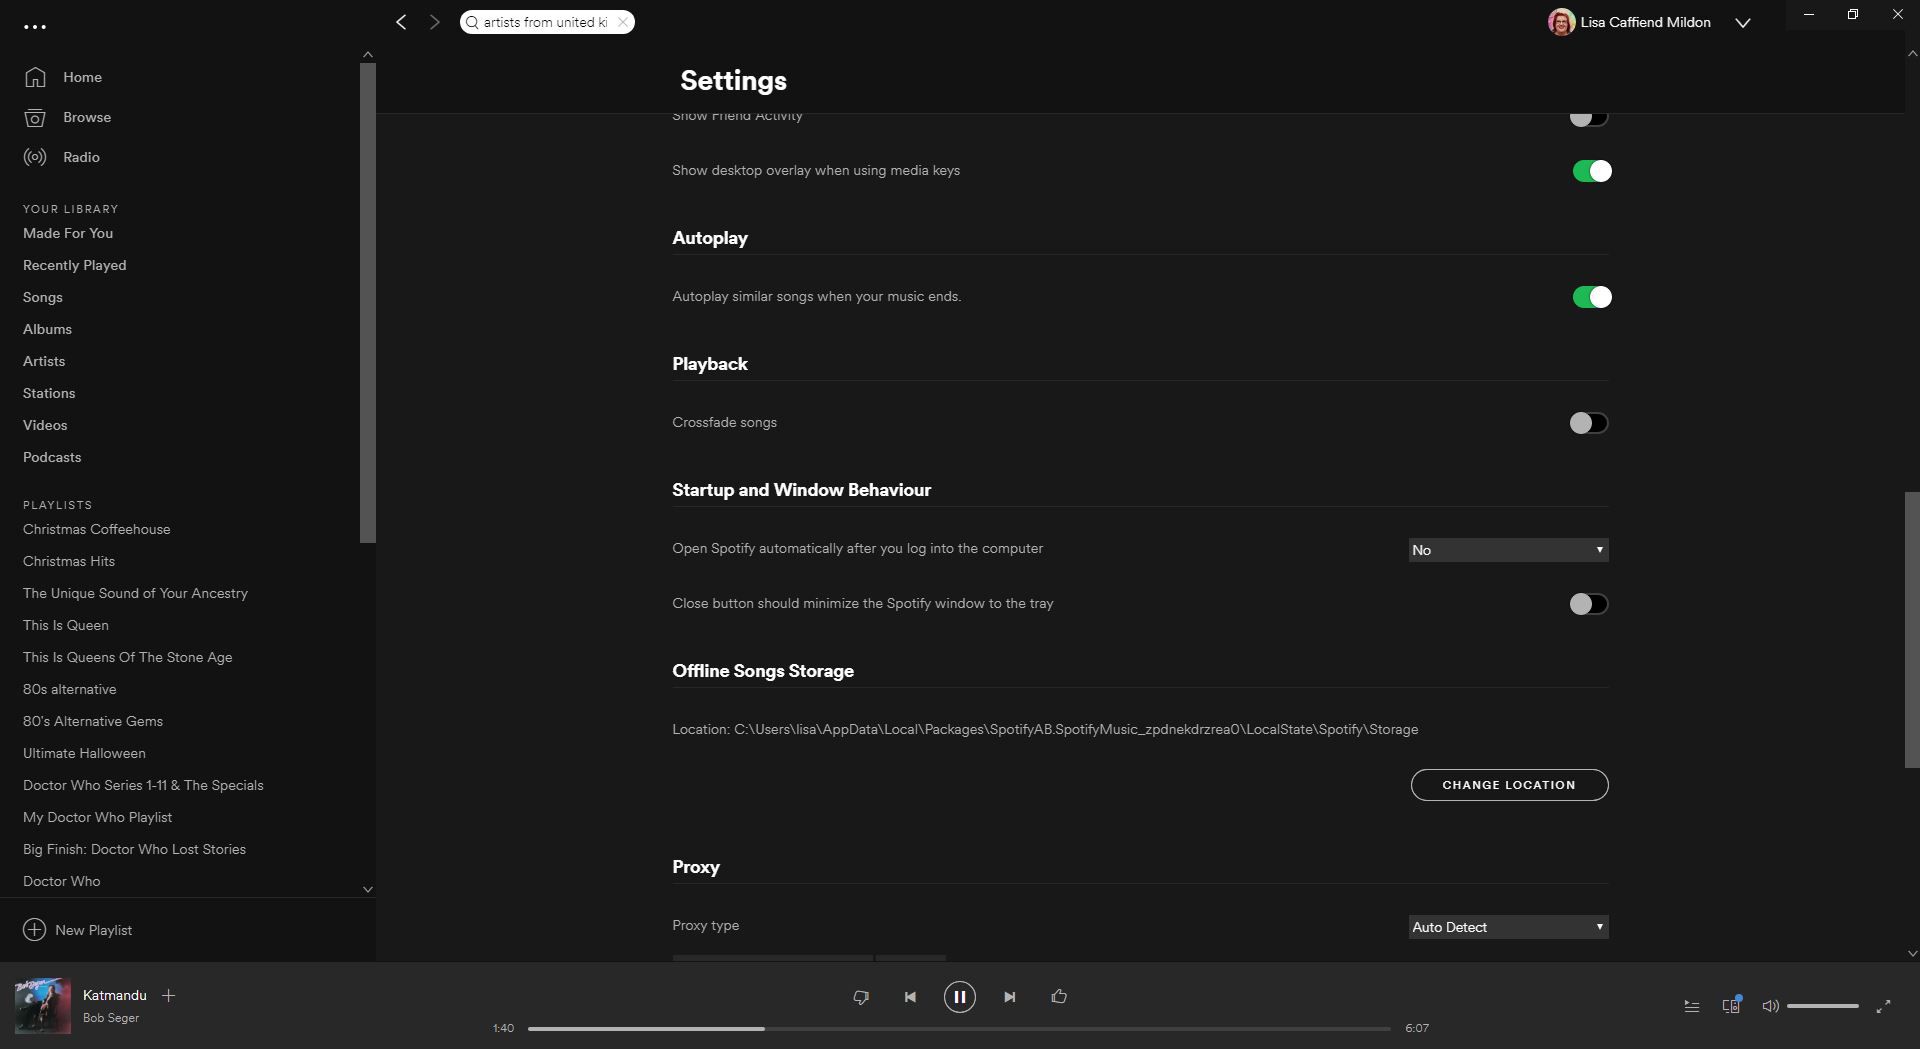 Configurações do Spotify exibidas.